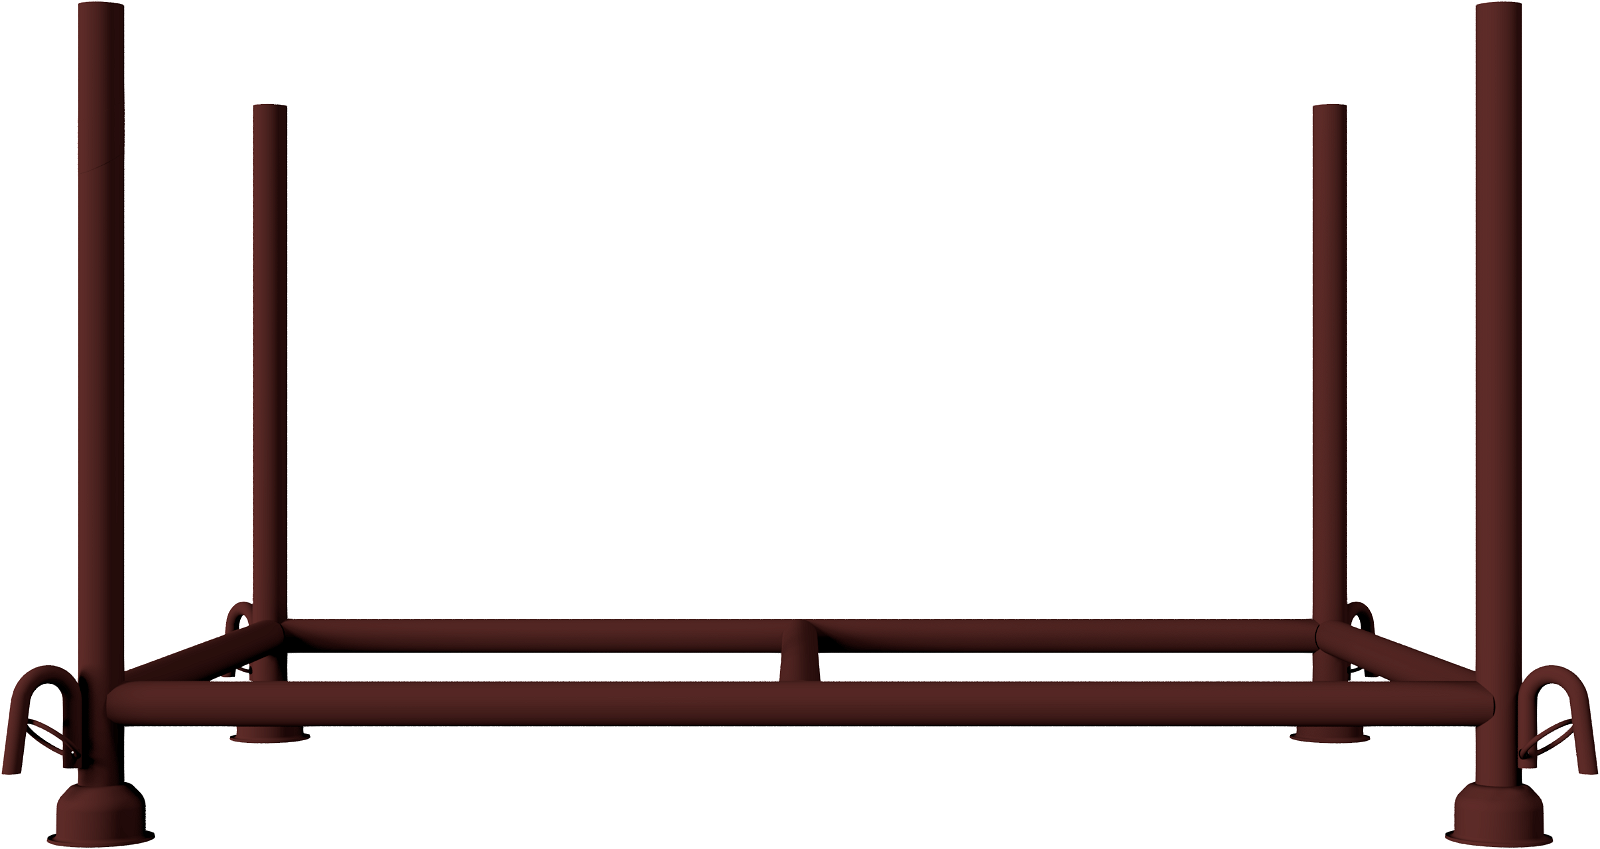 Modellbeispiel: Stapelpalette mit Kranhaken, lackiert (Art. 50150)